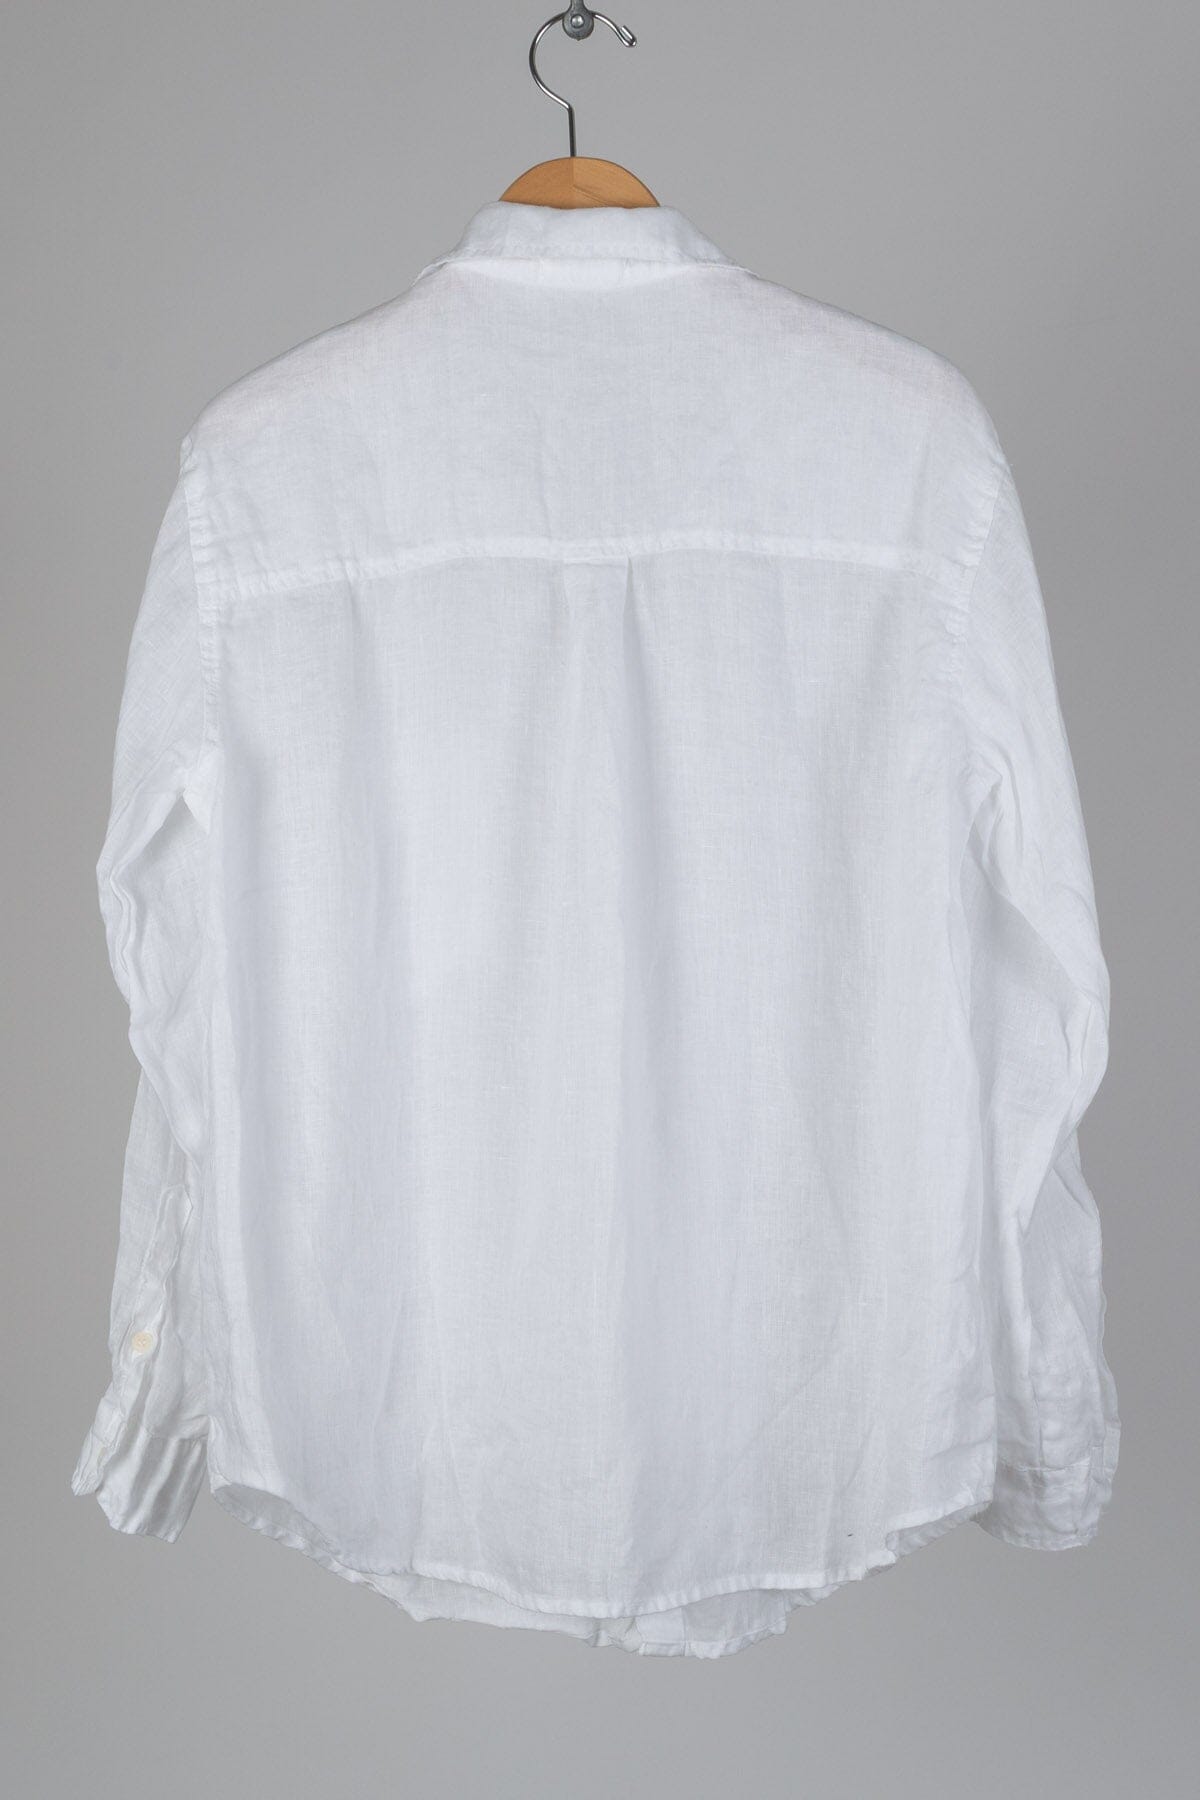 Joss - Linen S10 - Linen Shirt/Top/Tunic CP Shades 